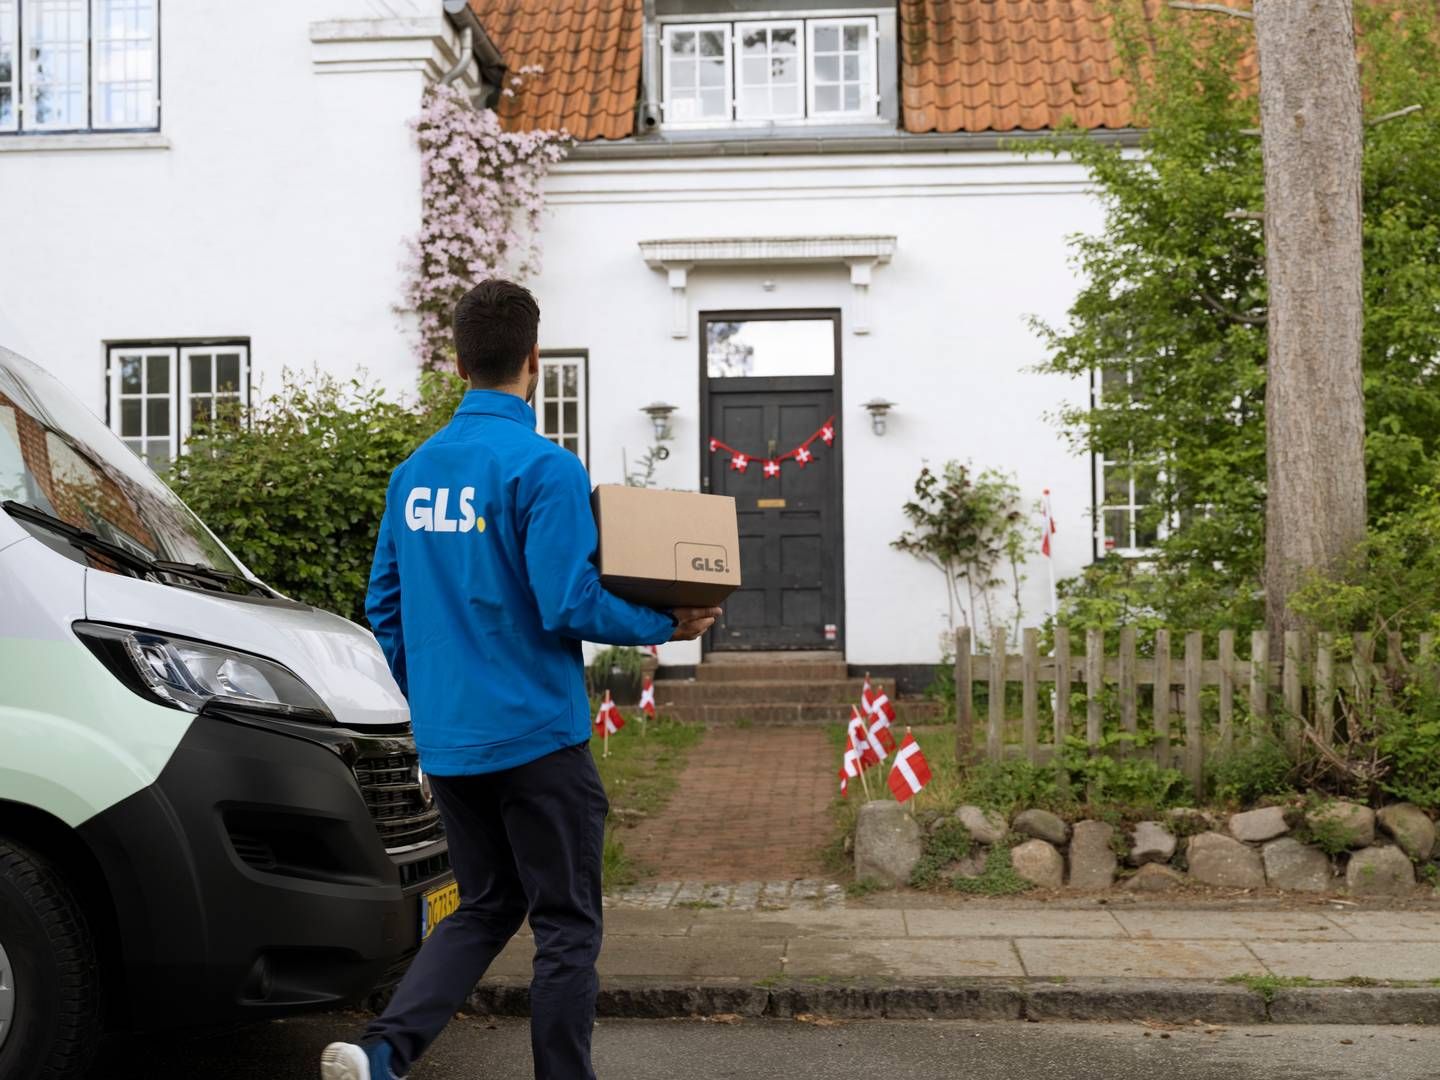 GLS vil fortsat kun levere pakker, selvom brevmarkedet med den nye postaftale også åbnes helt op. | Foto: GLS, PR